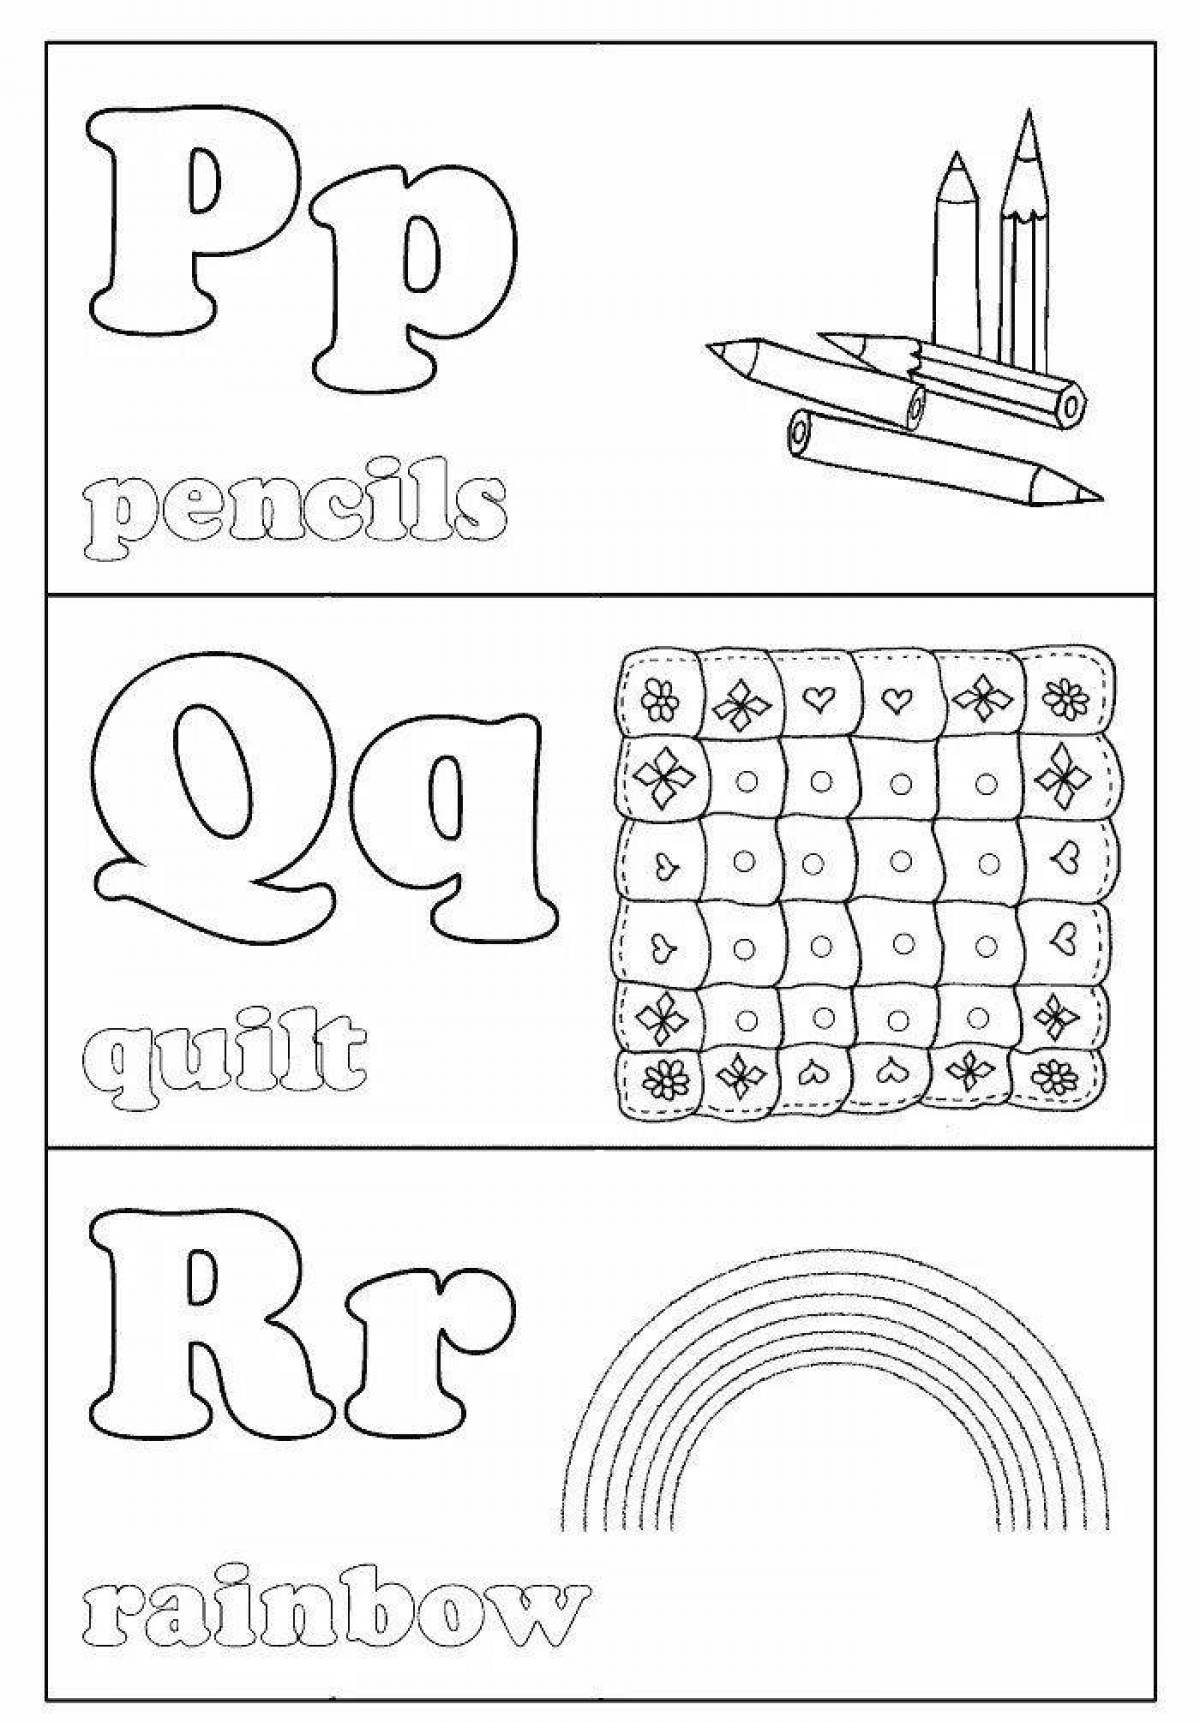 Creative alphabet coloring book